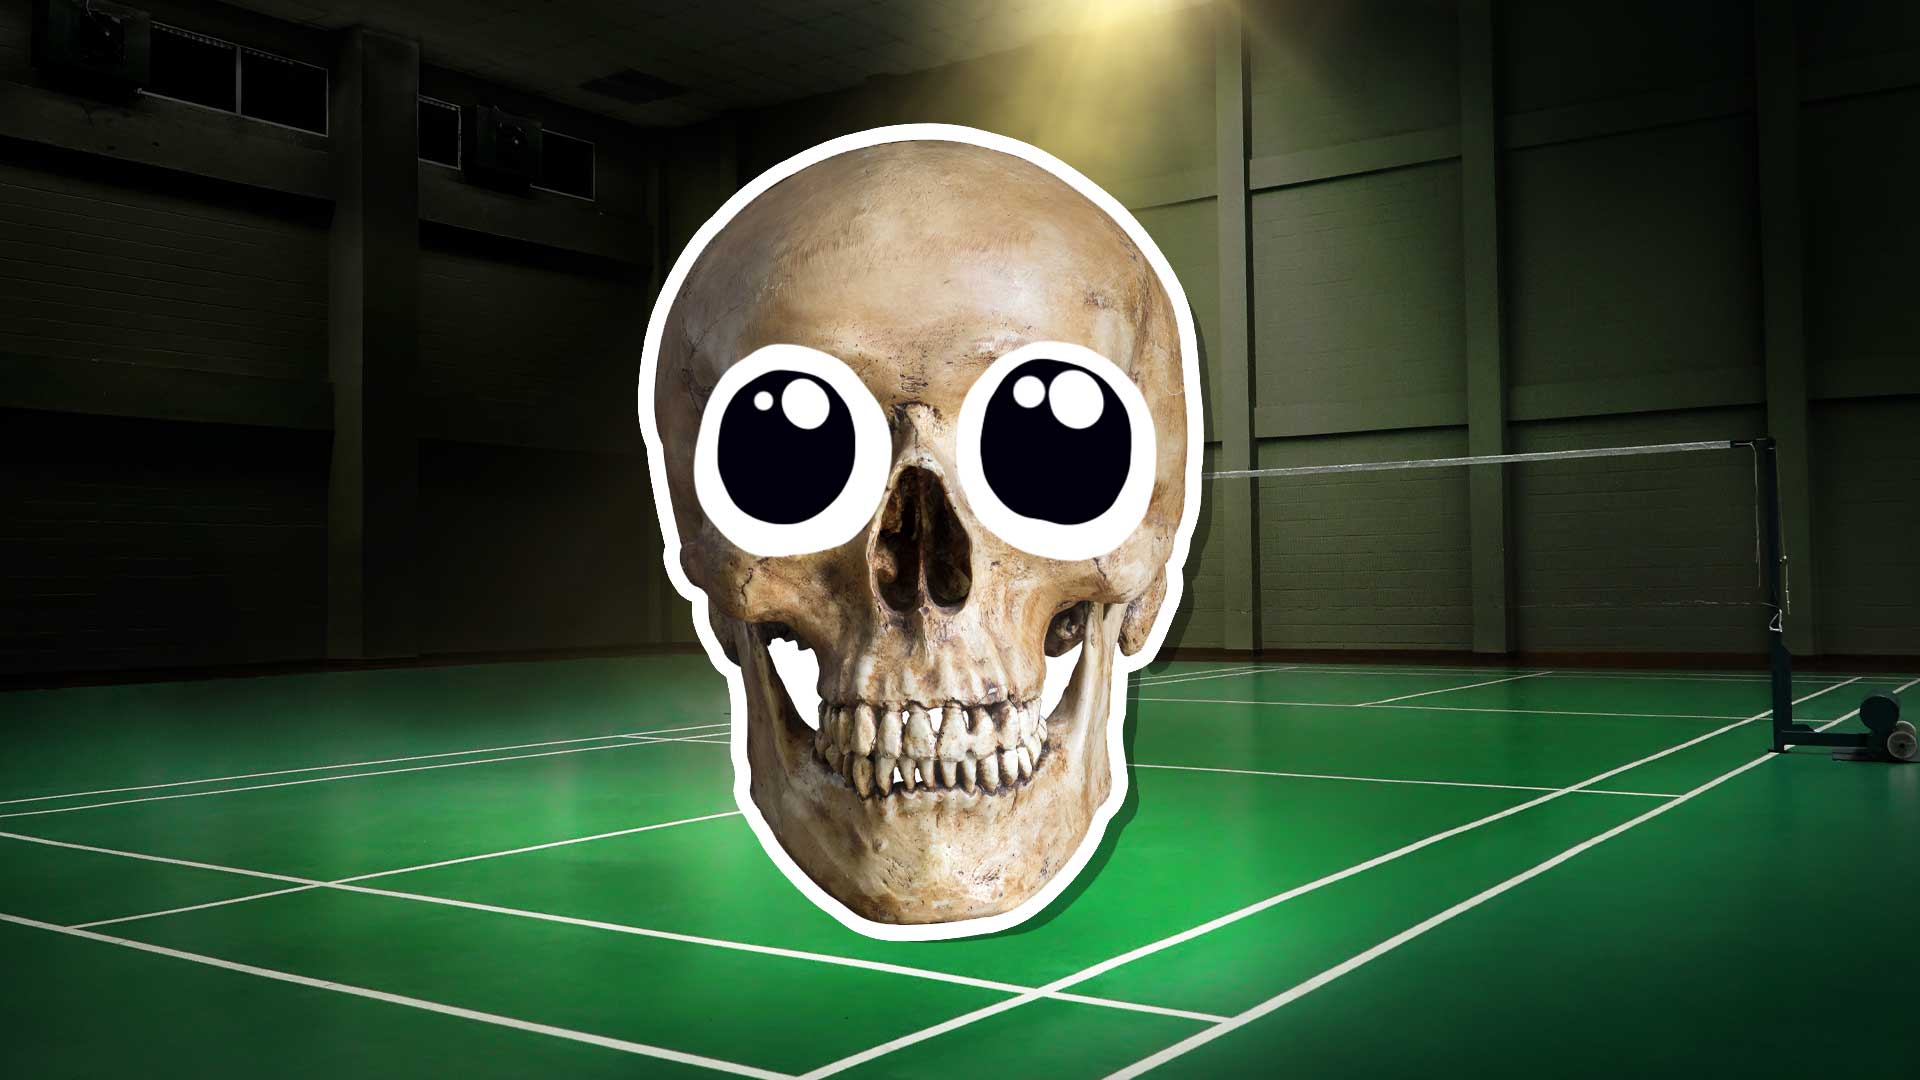 Skeleton at a badminton court